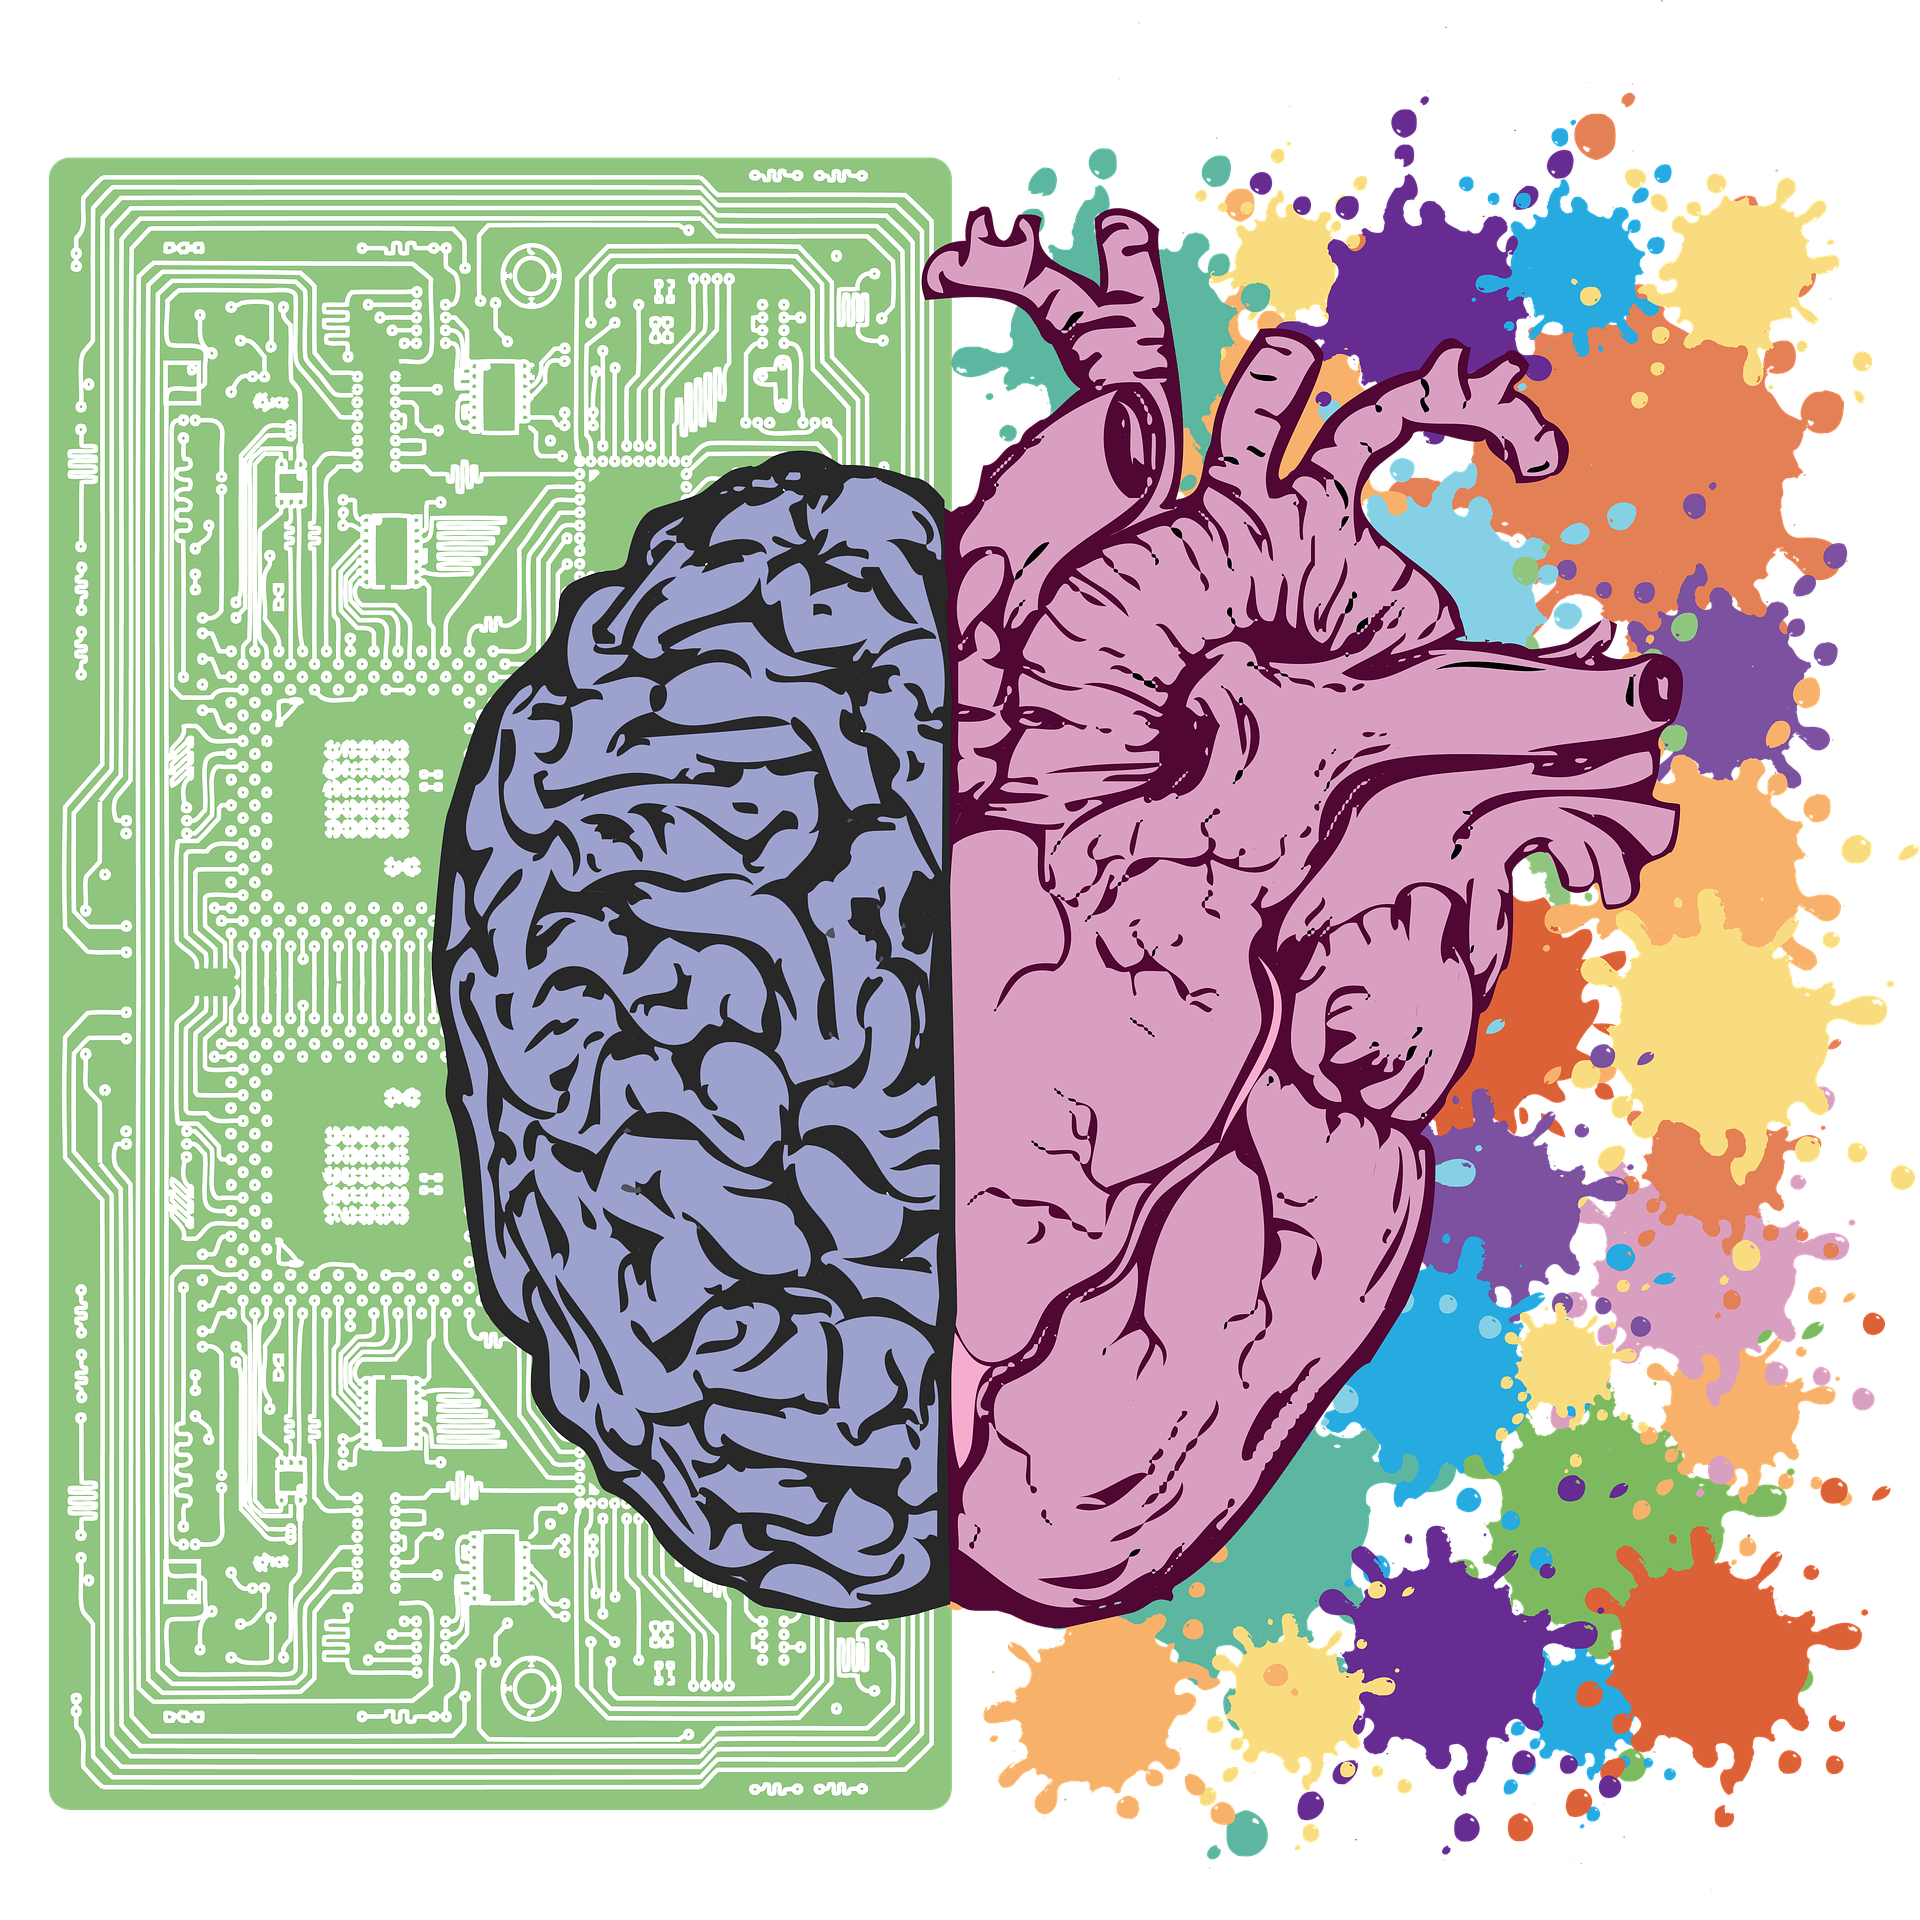 Los hemisferios derecho e izquierdo del cerebro con cada lado de un color diferente. El lado izquierdo se dibuja contra el fondo de un chip de computadora y el derecho contra un fondo de salpicaduras de diferentes colores brillantes.